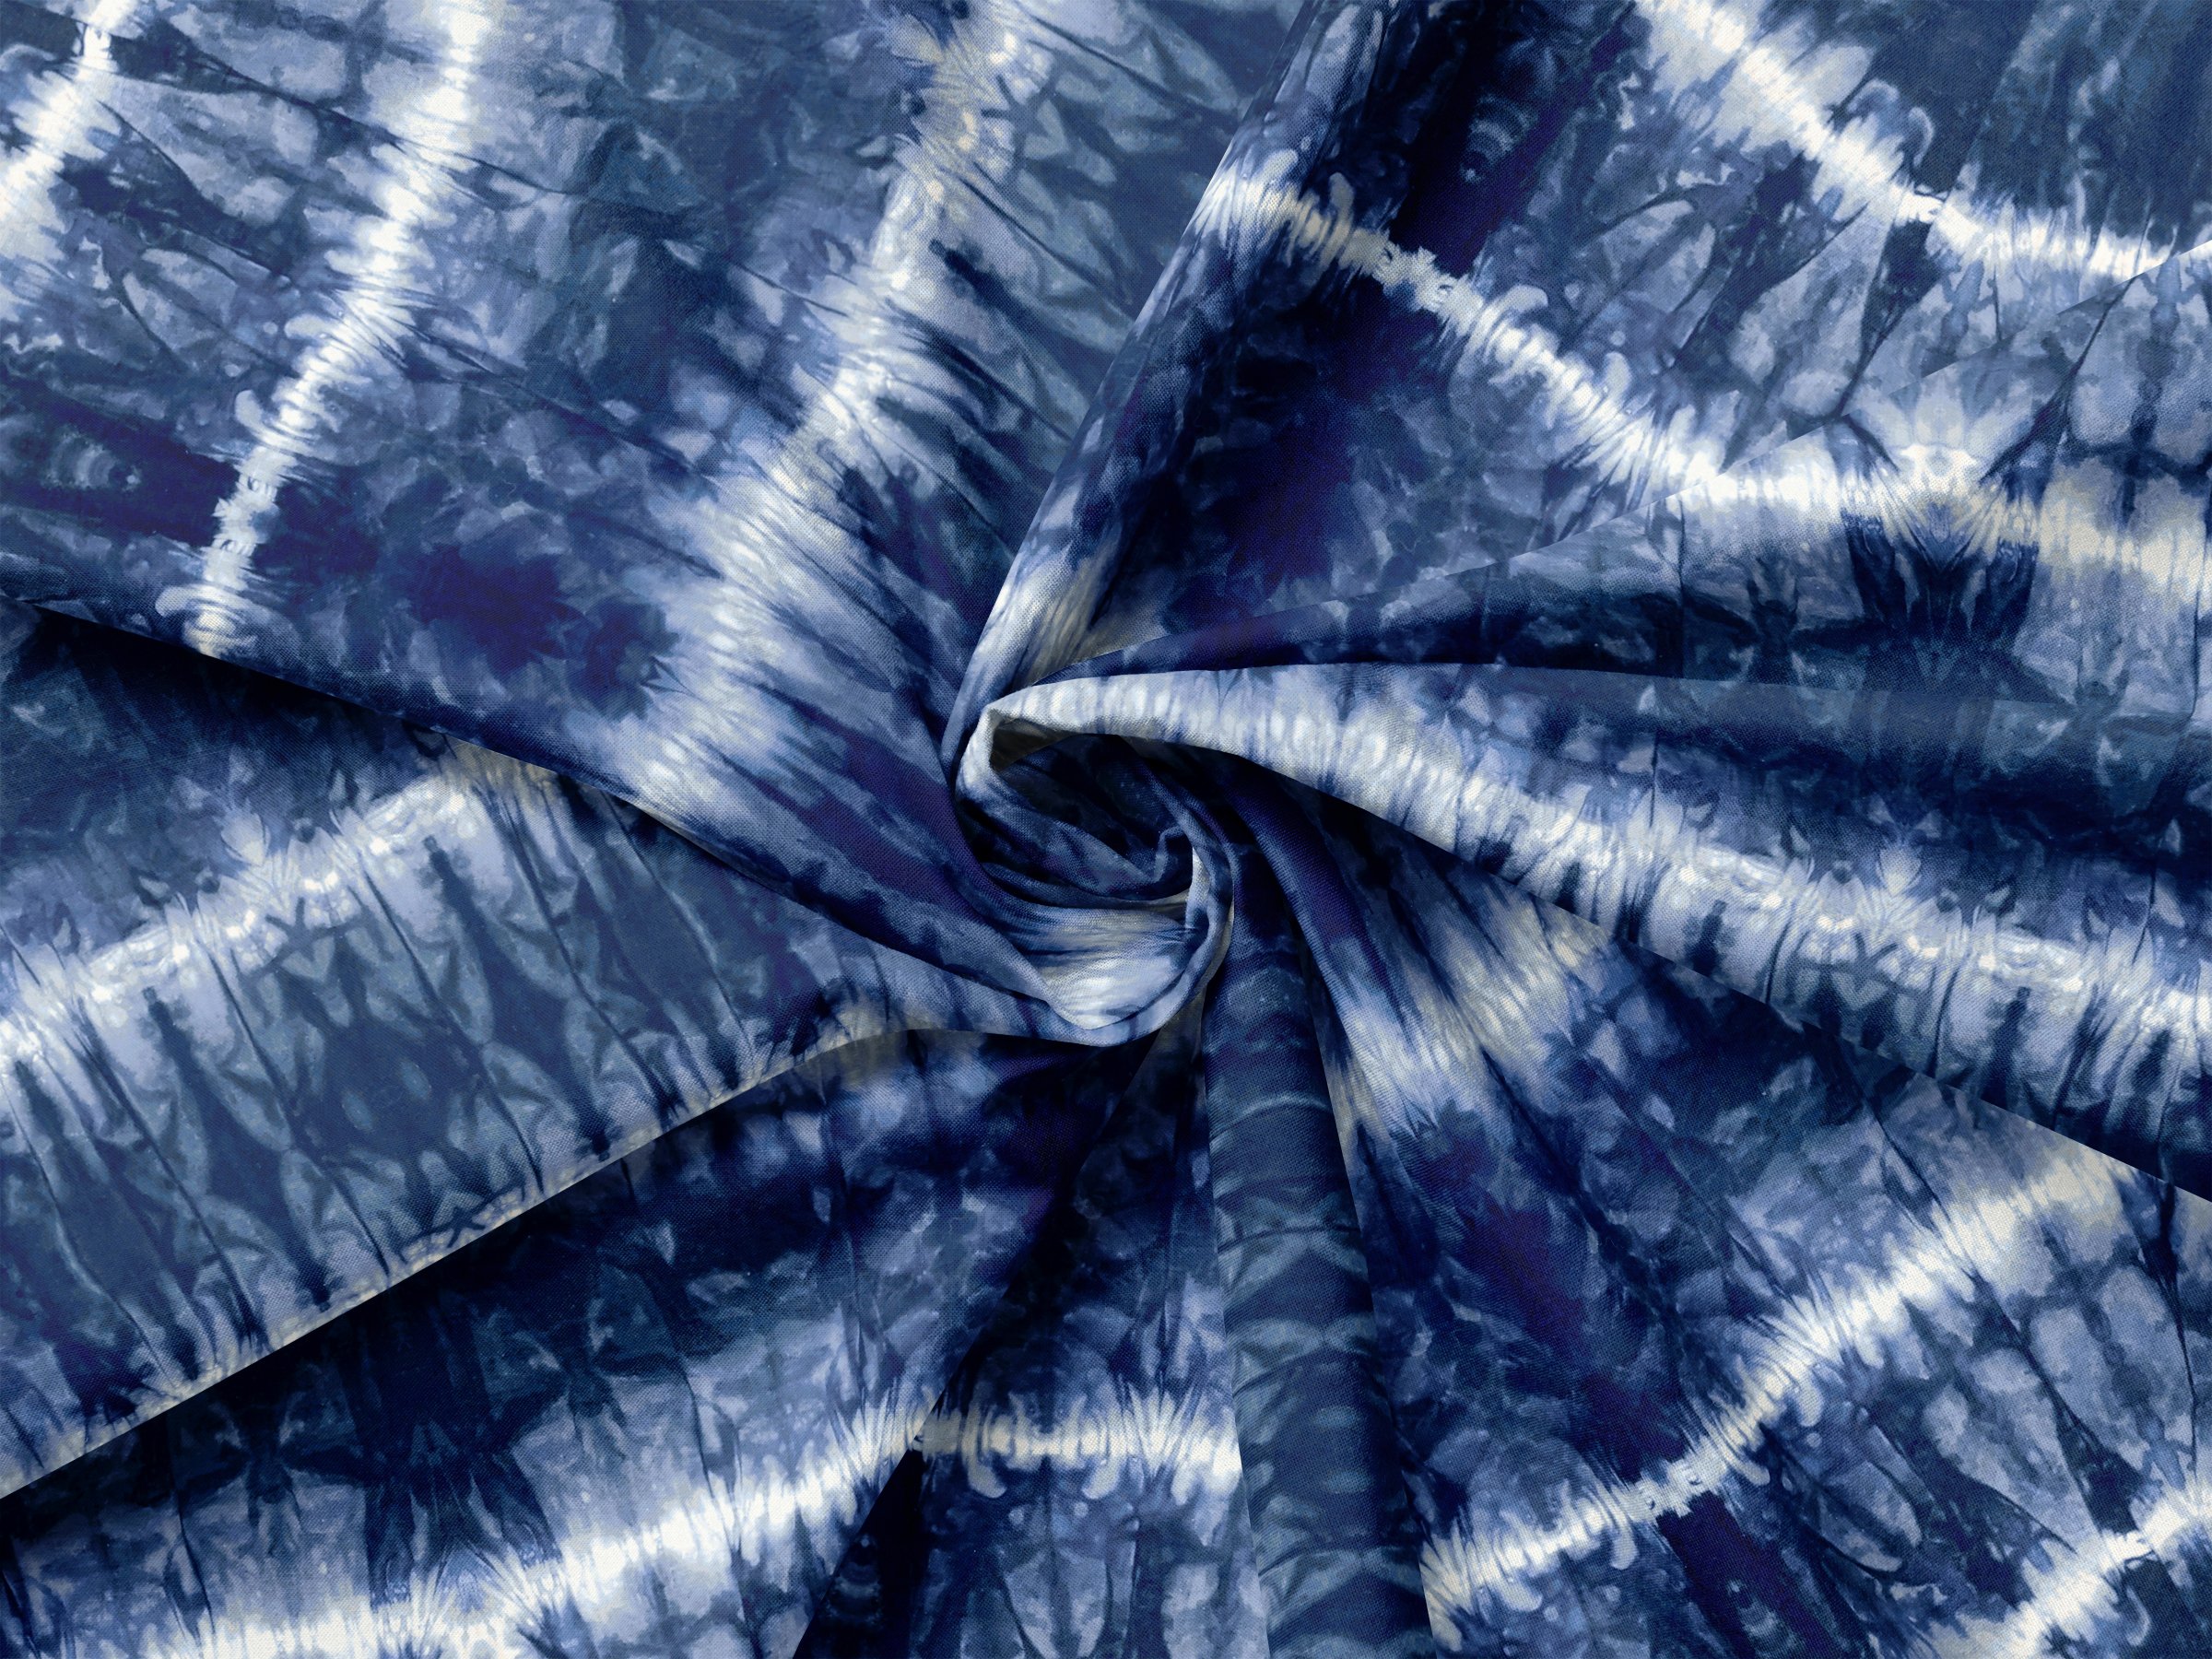 Shibori Tie Dye - Seamless Print cover image.